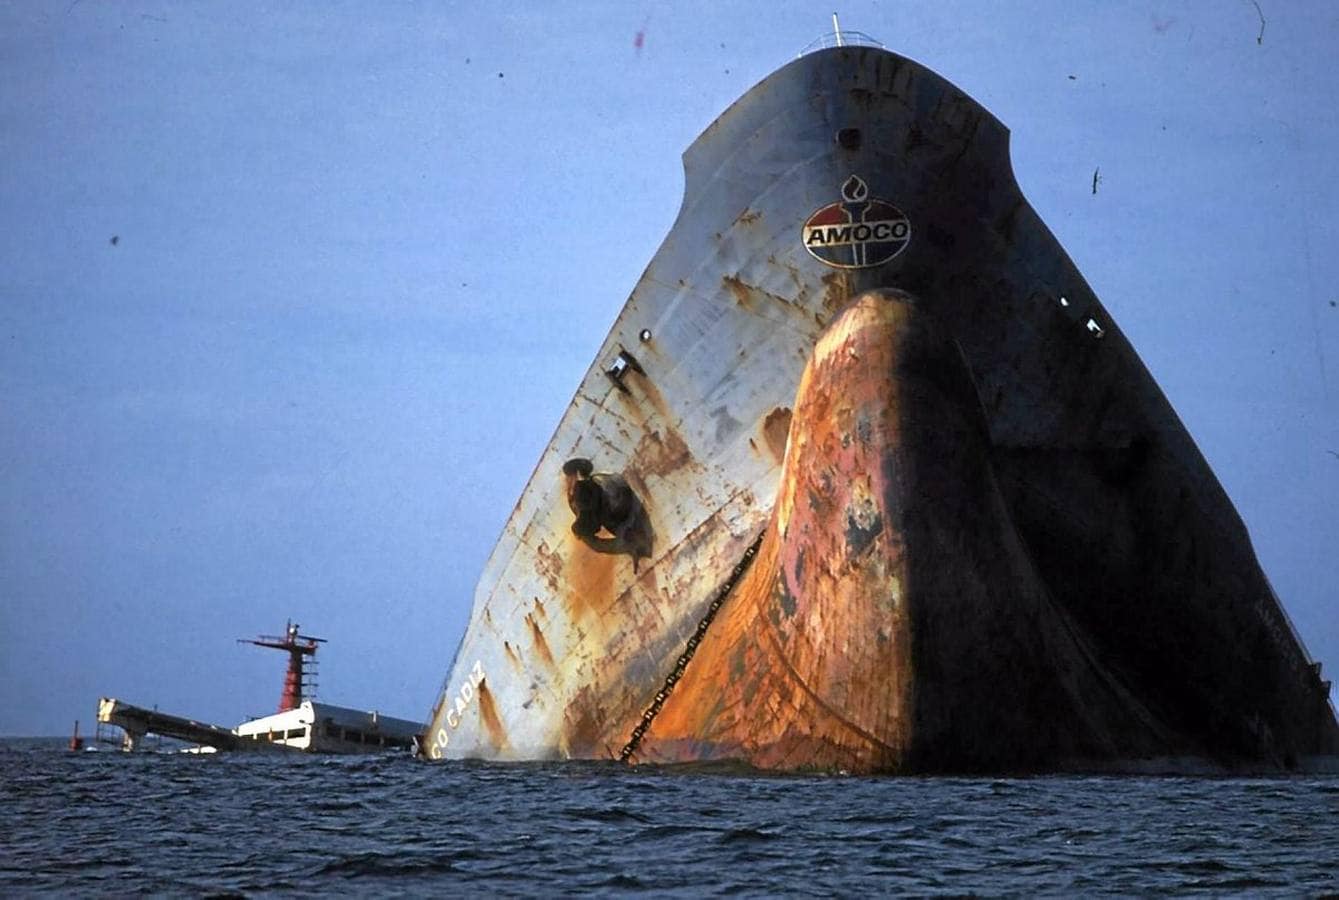 Las imágenes del naufragio del Amoco Cádiz